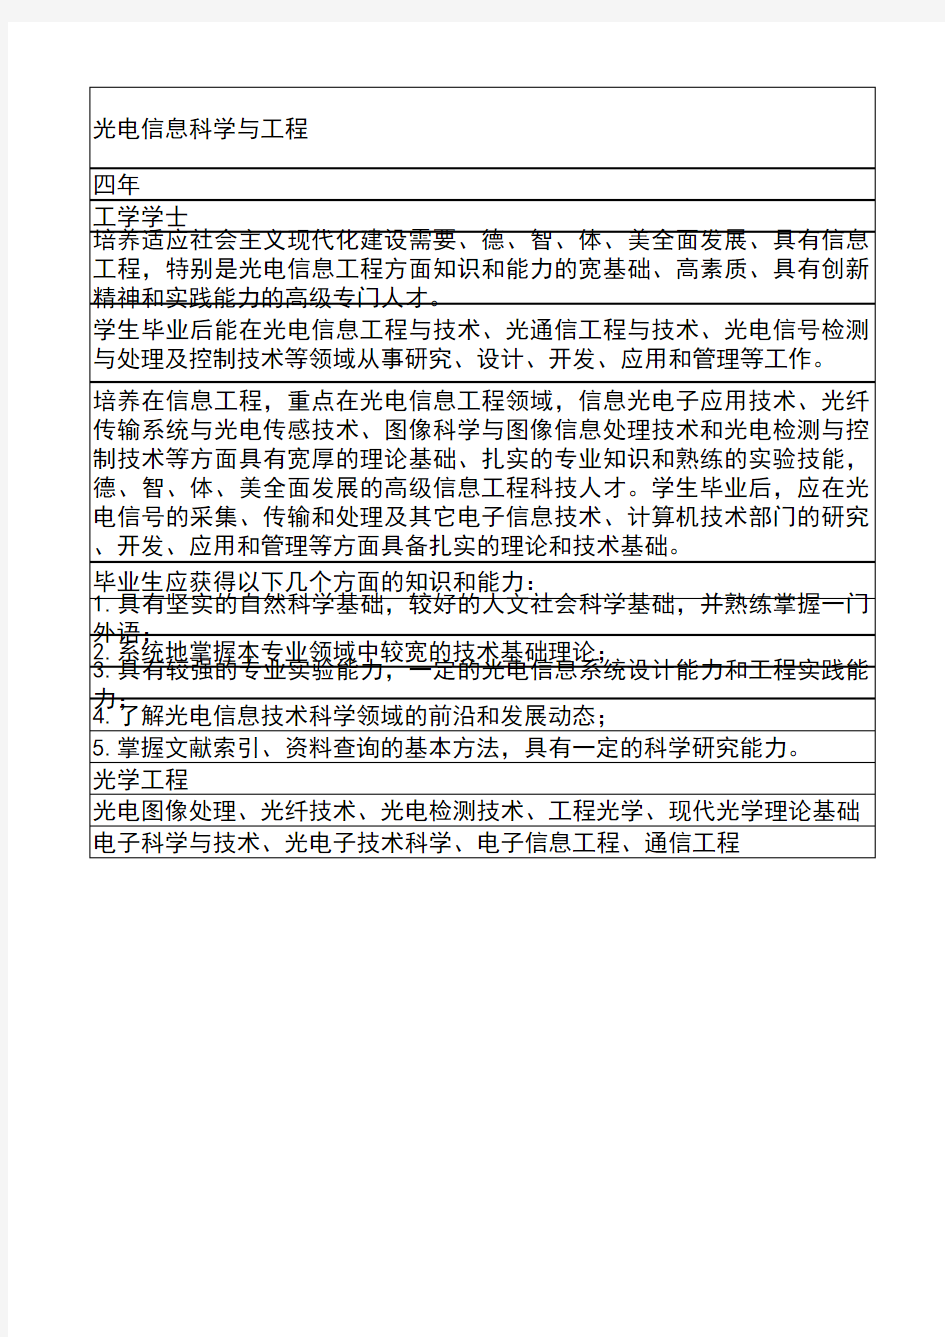 017-天津大学-光电信息科学与工程(本科培养方案)